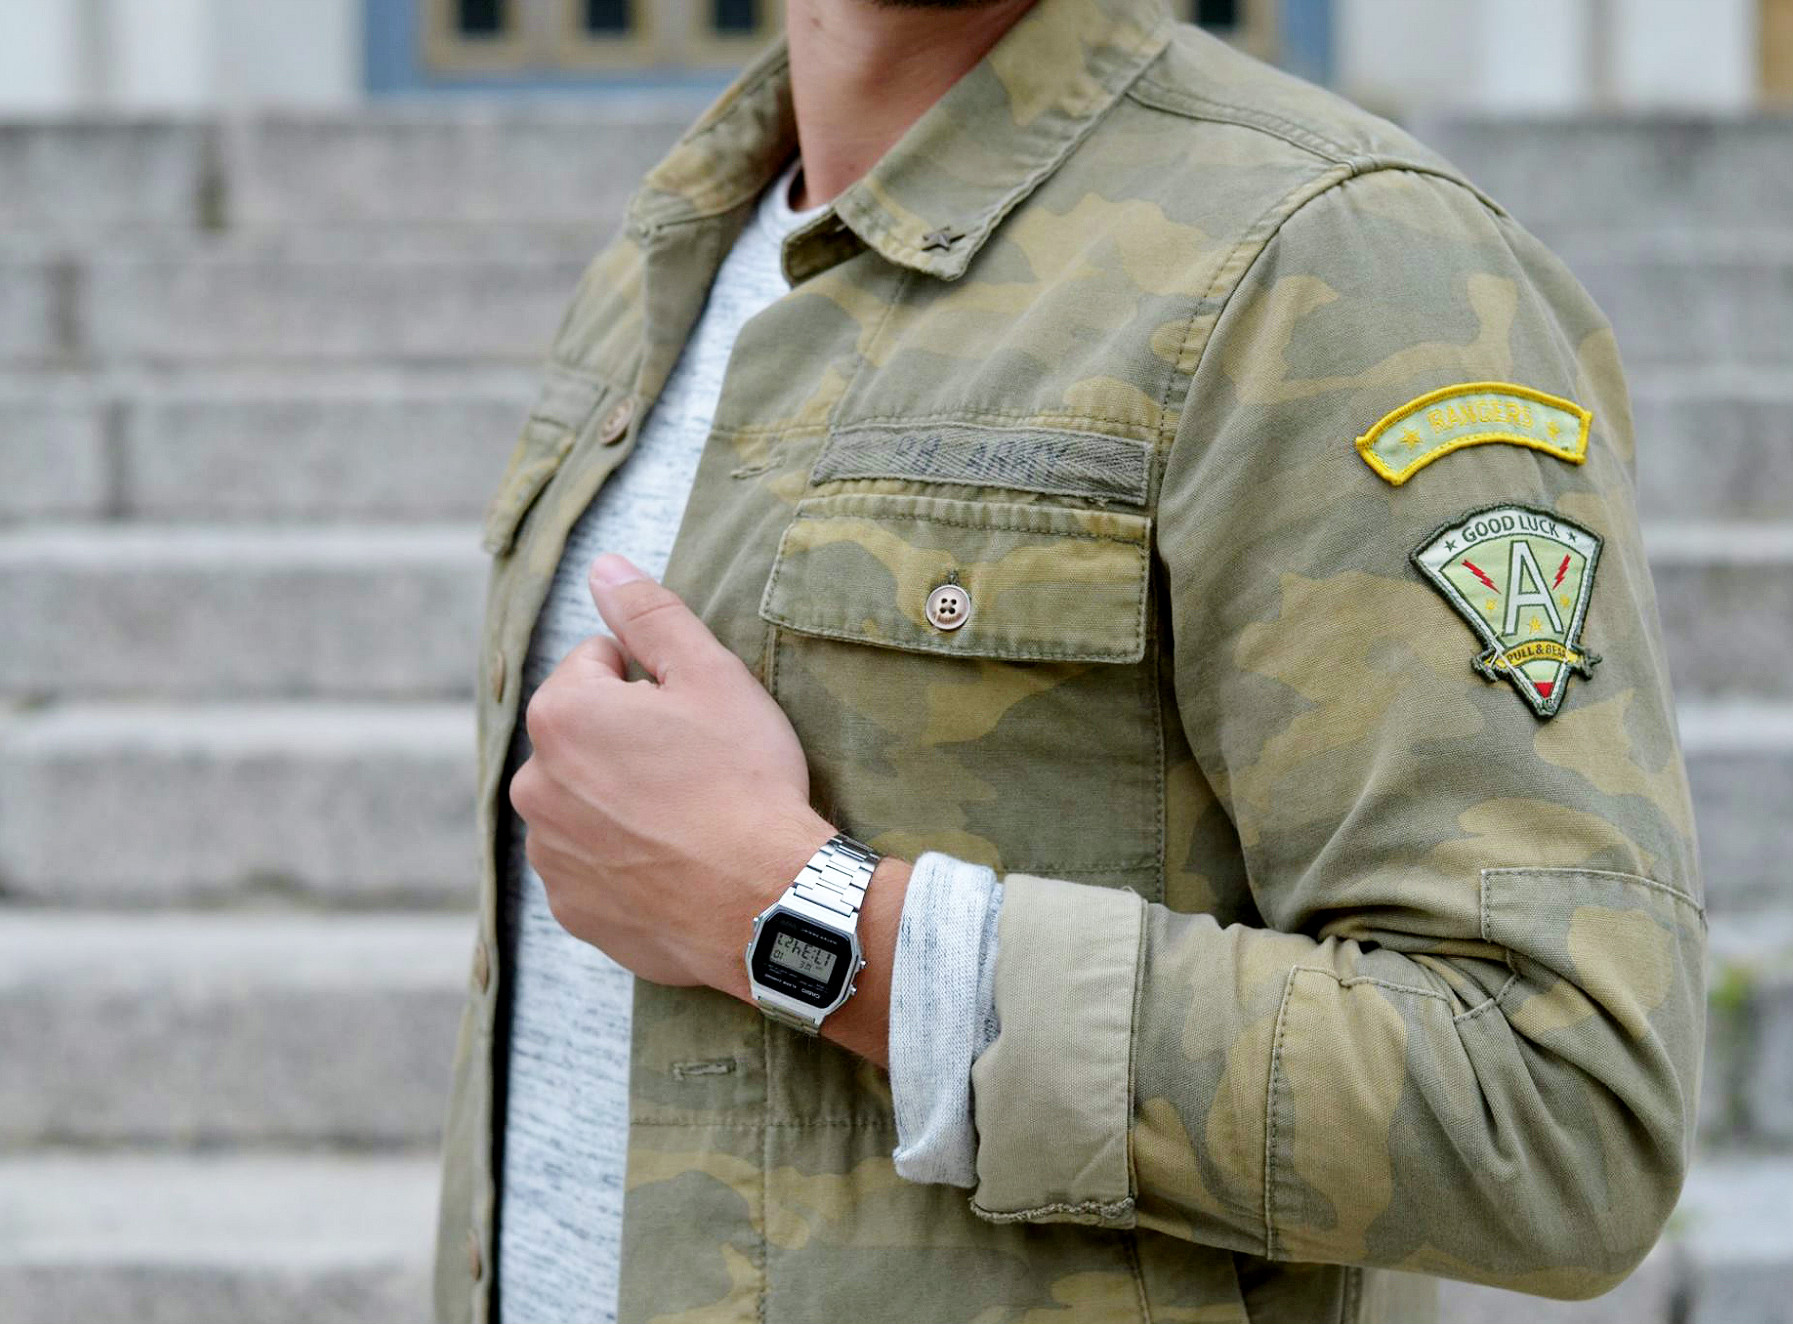 Modeblog-Berlin-Männer-Blog-Fashion-Camouflage-Jacke-Casio-Uhr-silber